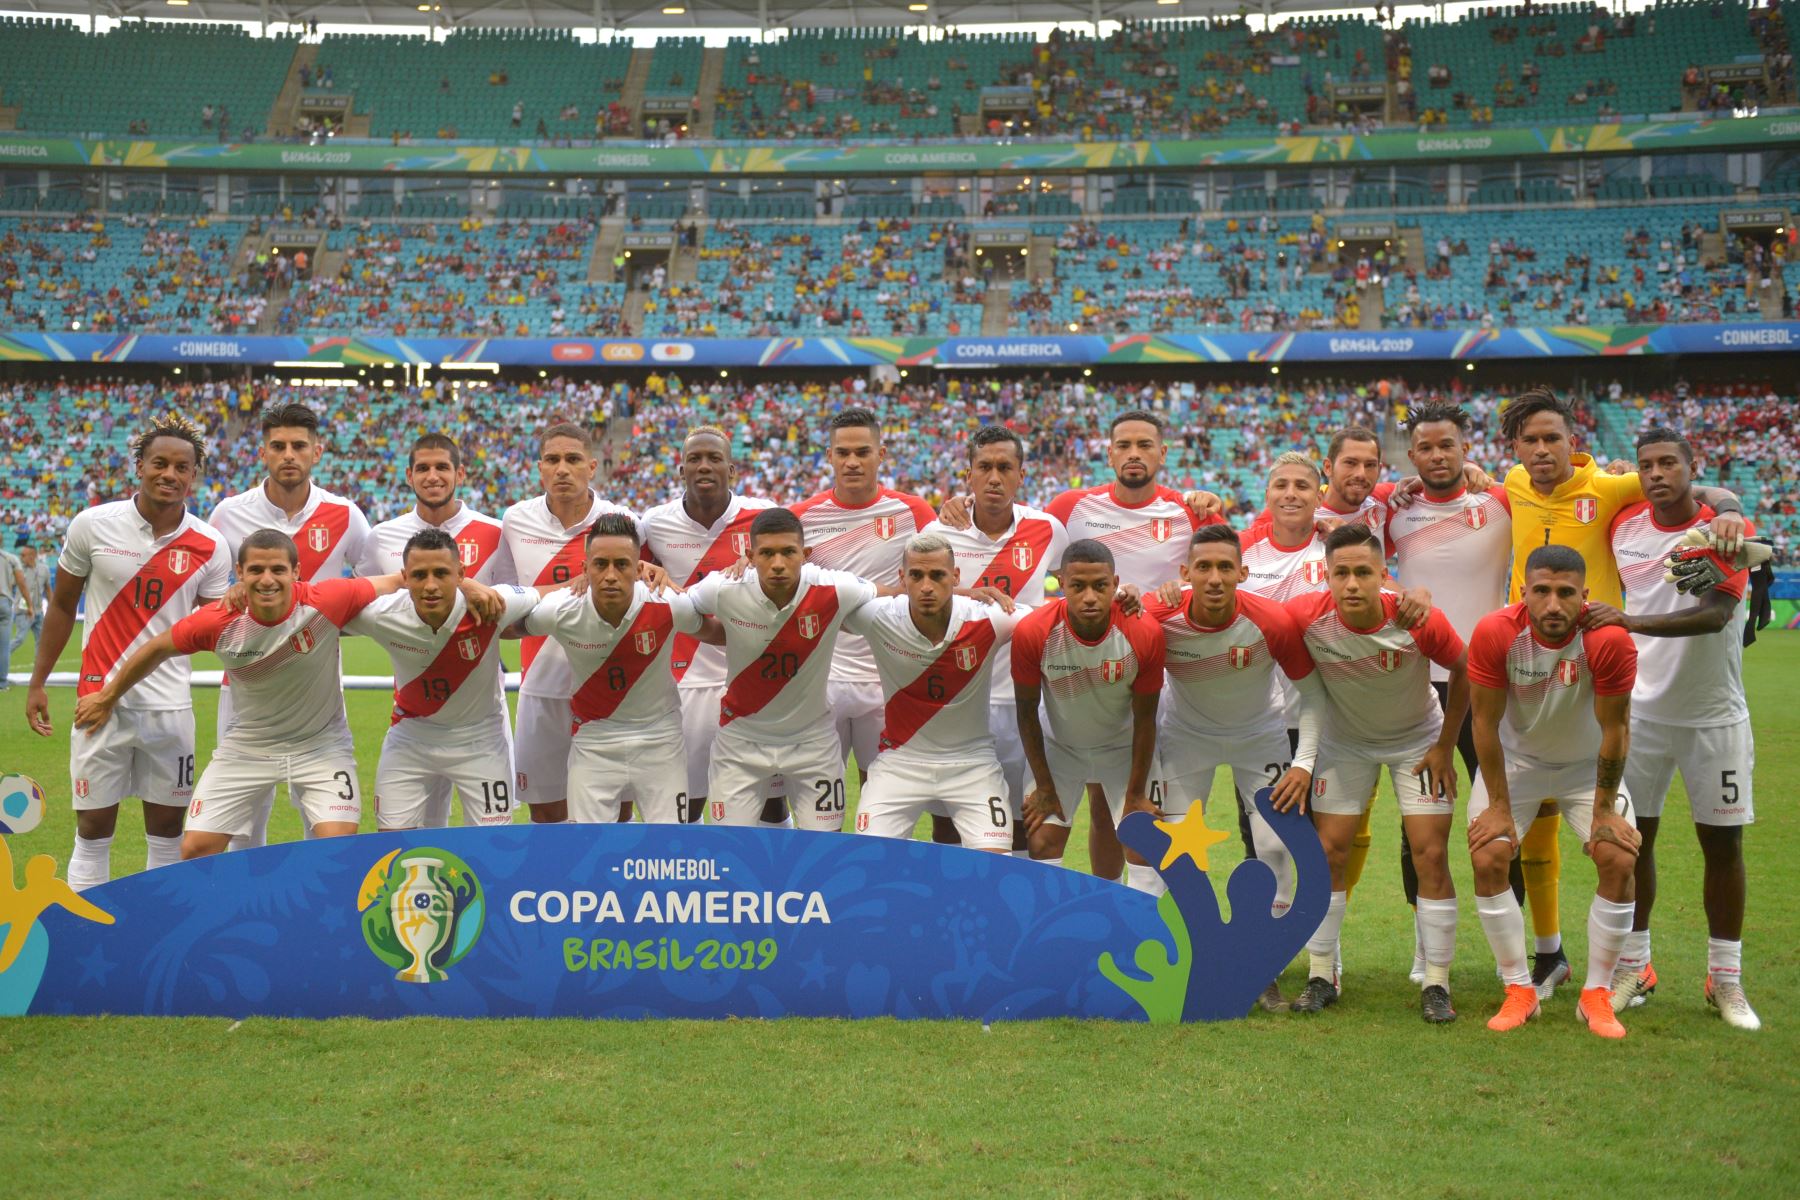 Los jugadores de Perú posan para las fotos antes de su partido de los cuartos de final del torneo de fútbol de la Copa América contra Uruguay en el Fonte Nova Arena en Salvador, Brasil.
Foto: AFP

Foto: ANDINA/Carlos Lezama